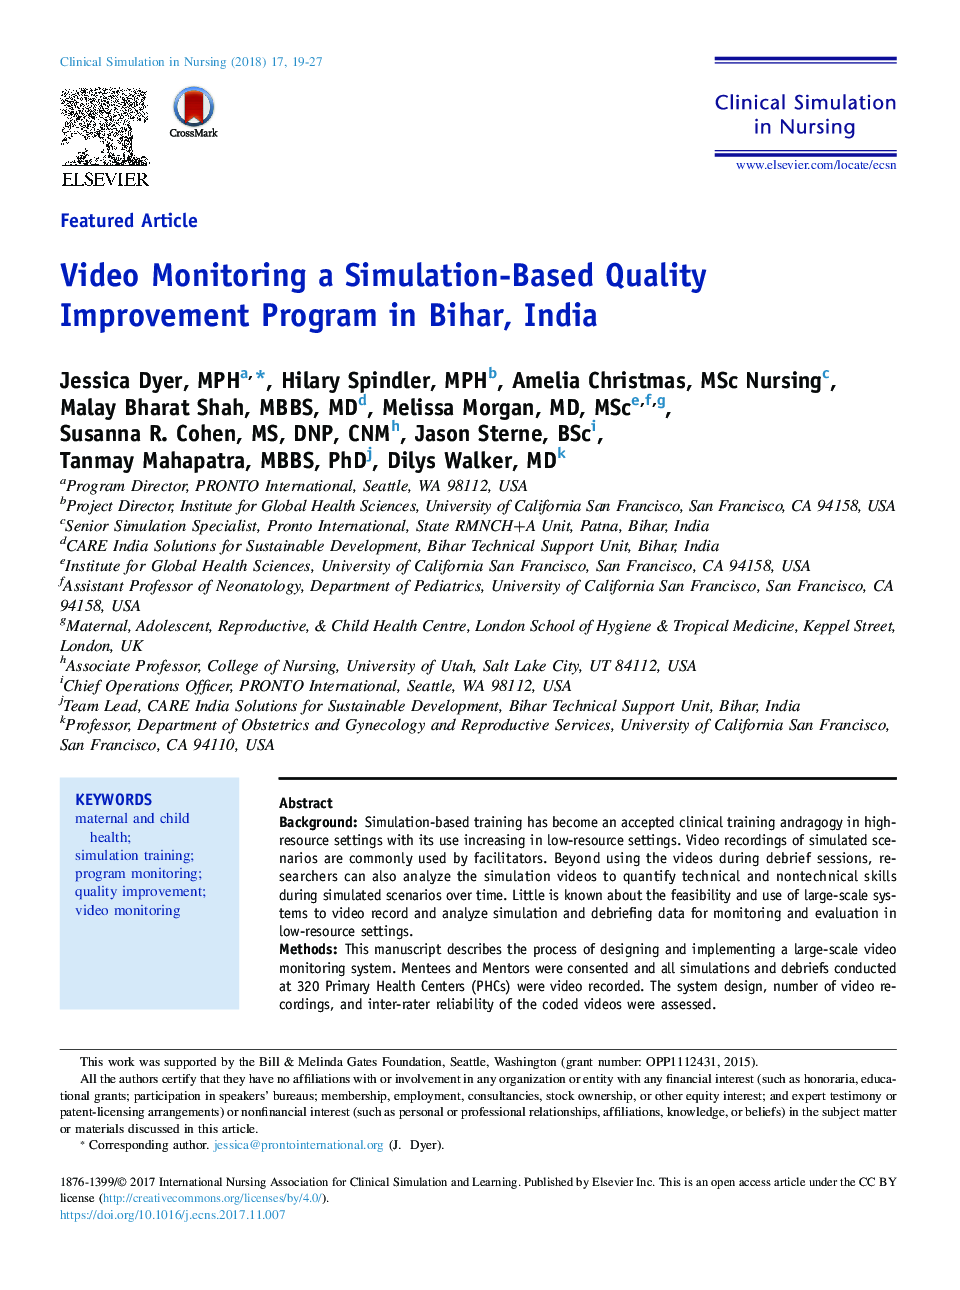 نظارت تصویری برنامه بهبود کیفیت مبتنی بر شبیه سازی در بیحر، هند 